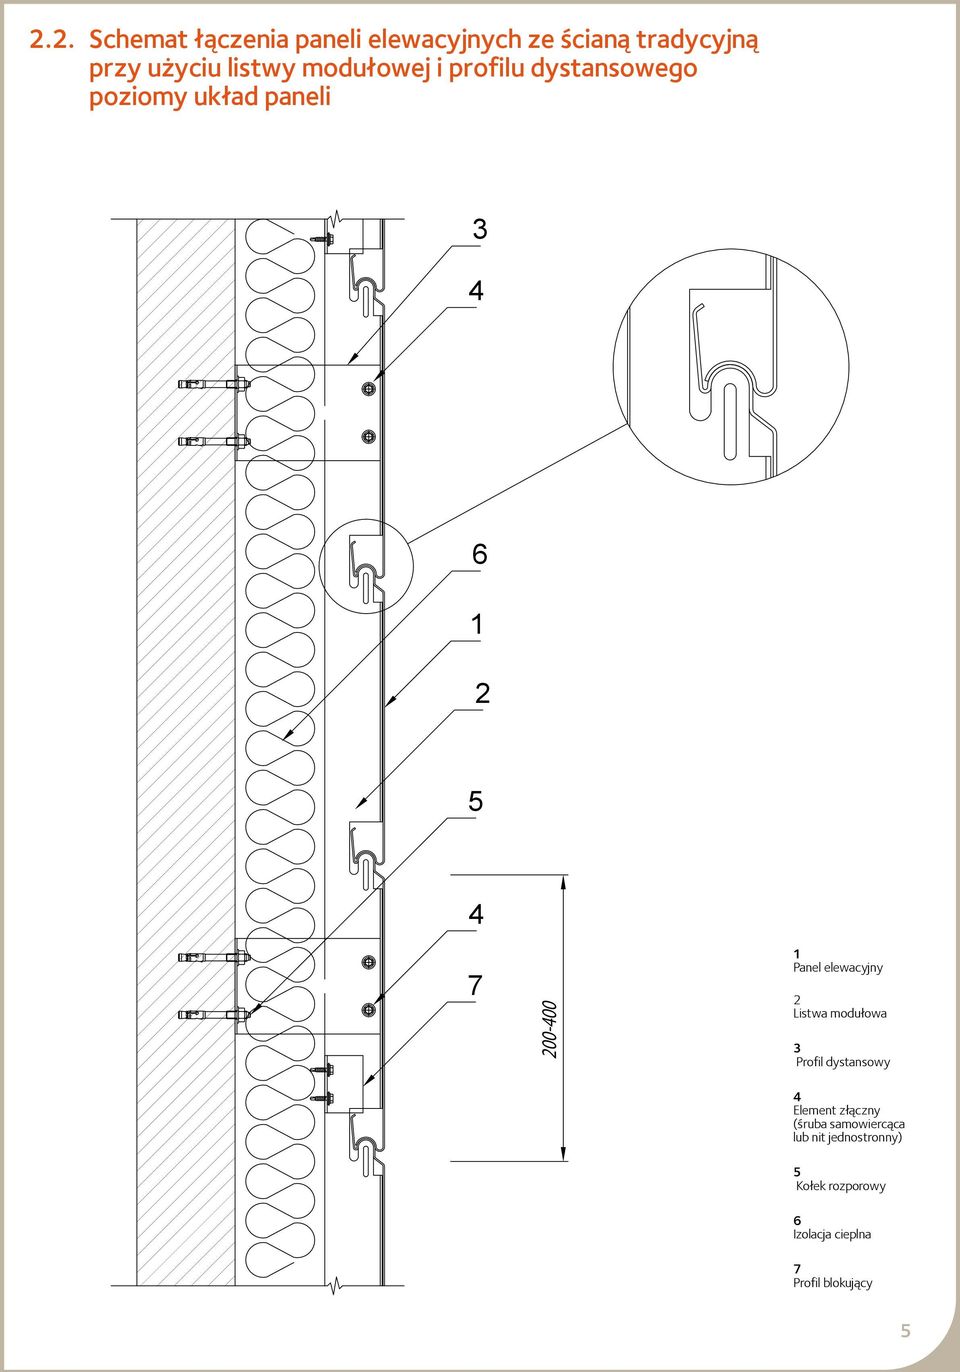 elewacyjny Listwa modułowa Profil dystansowy Element złączny (śruba